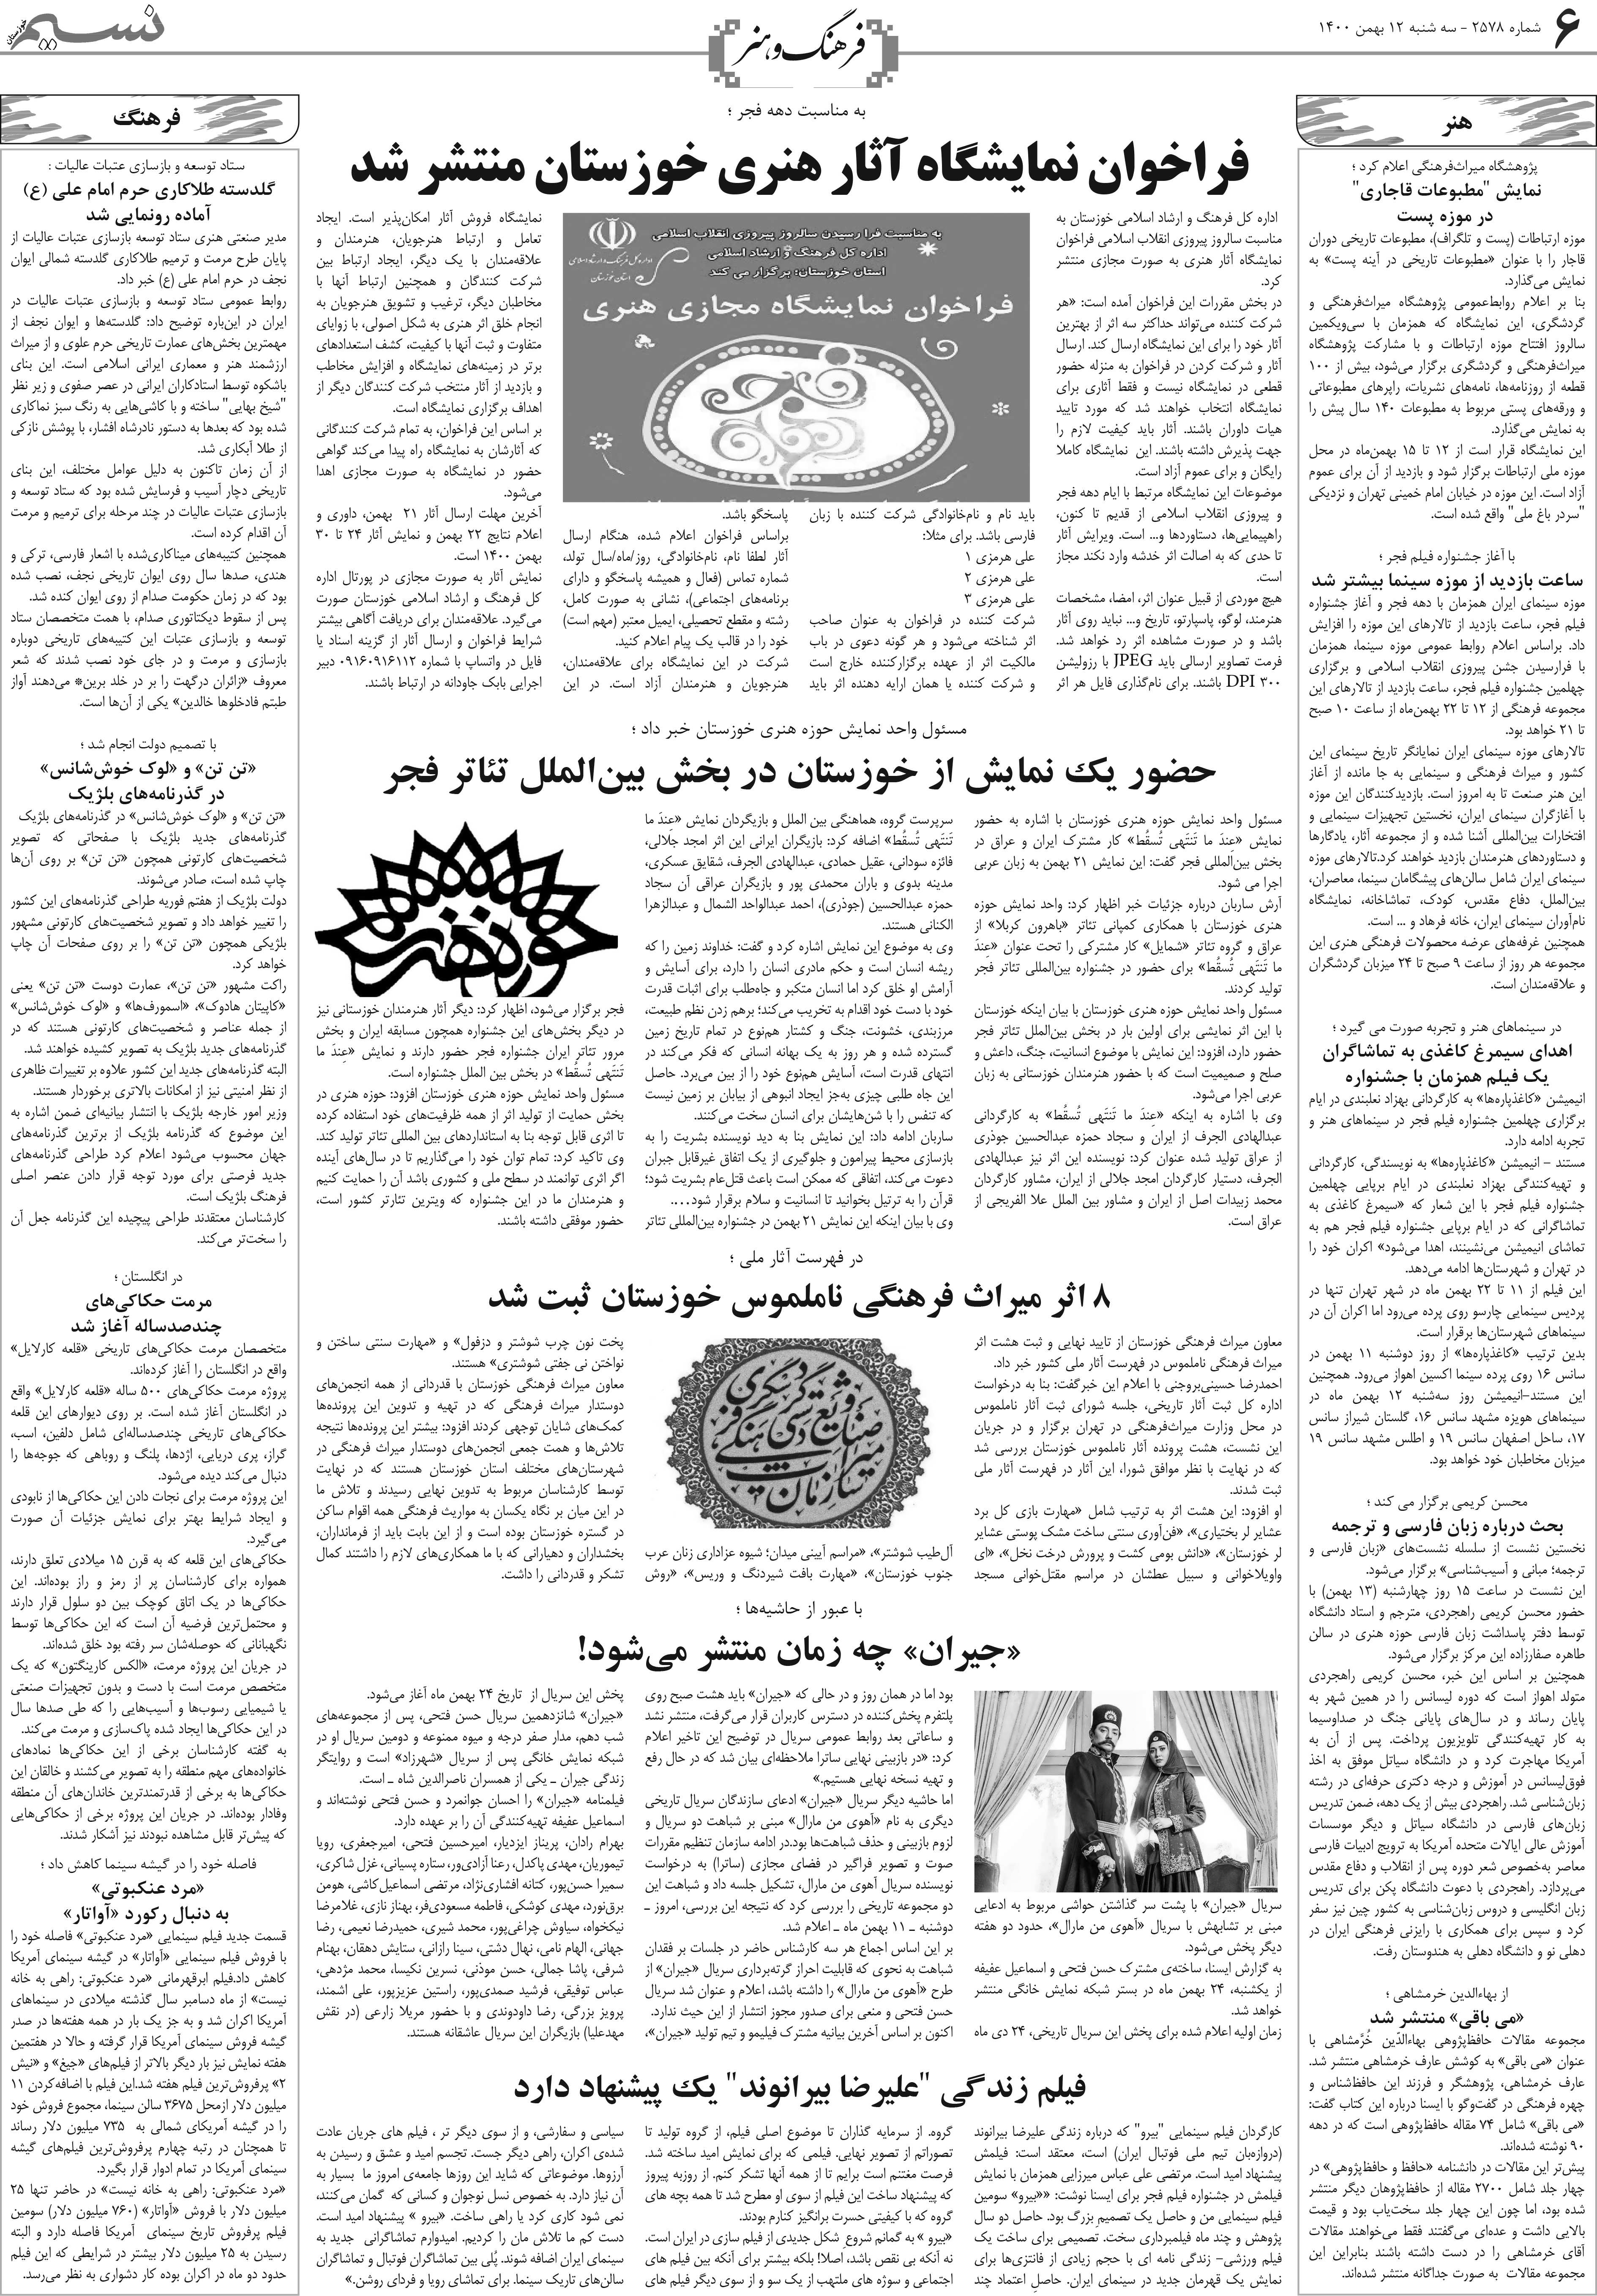 صفحه فرهنگ و هنر روزنامه نسیم شماره 2578